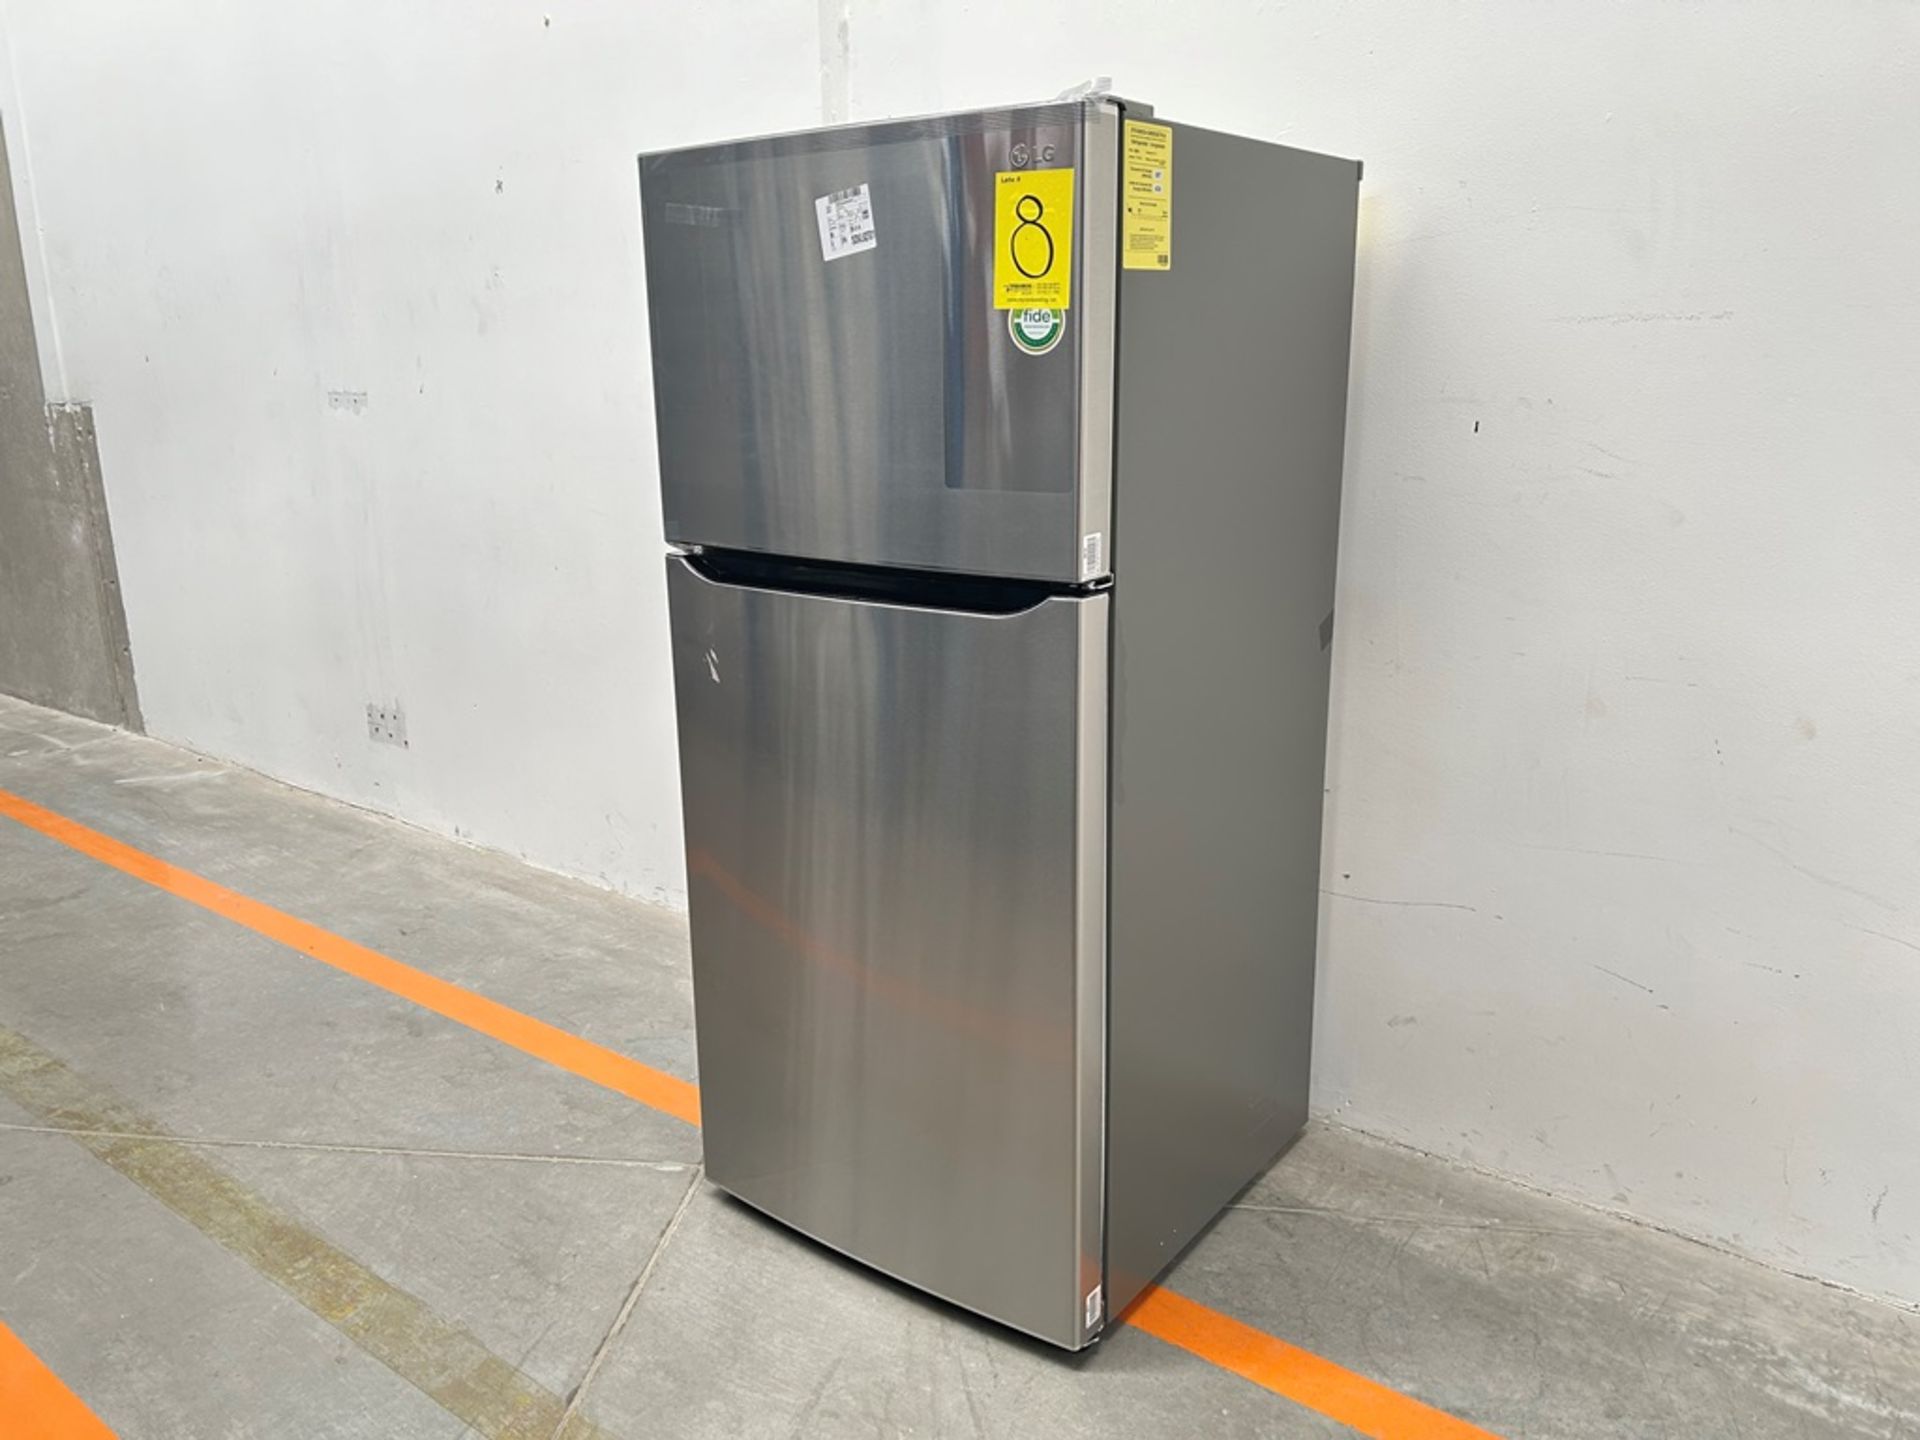 (NUEVO) Refrigerador Marca LG, Modelo LT57BPSX, Serie P2D419, Color GRIS - Image 2 of 11